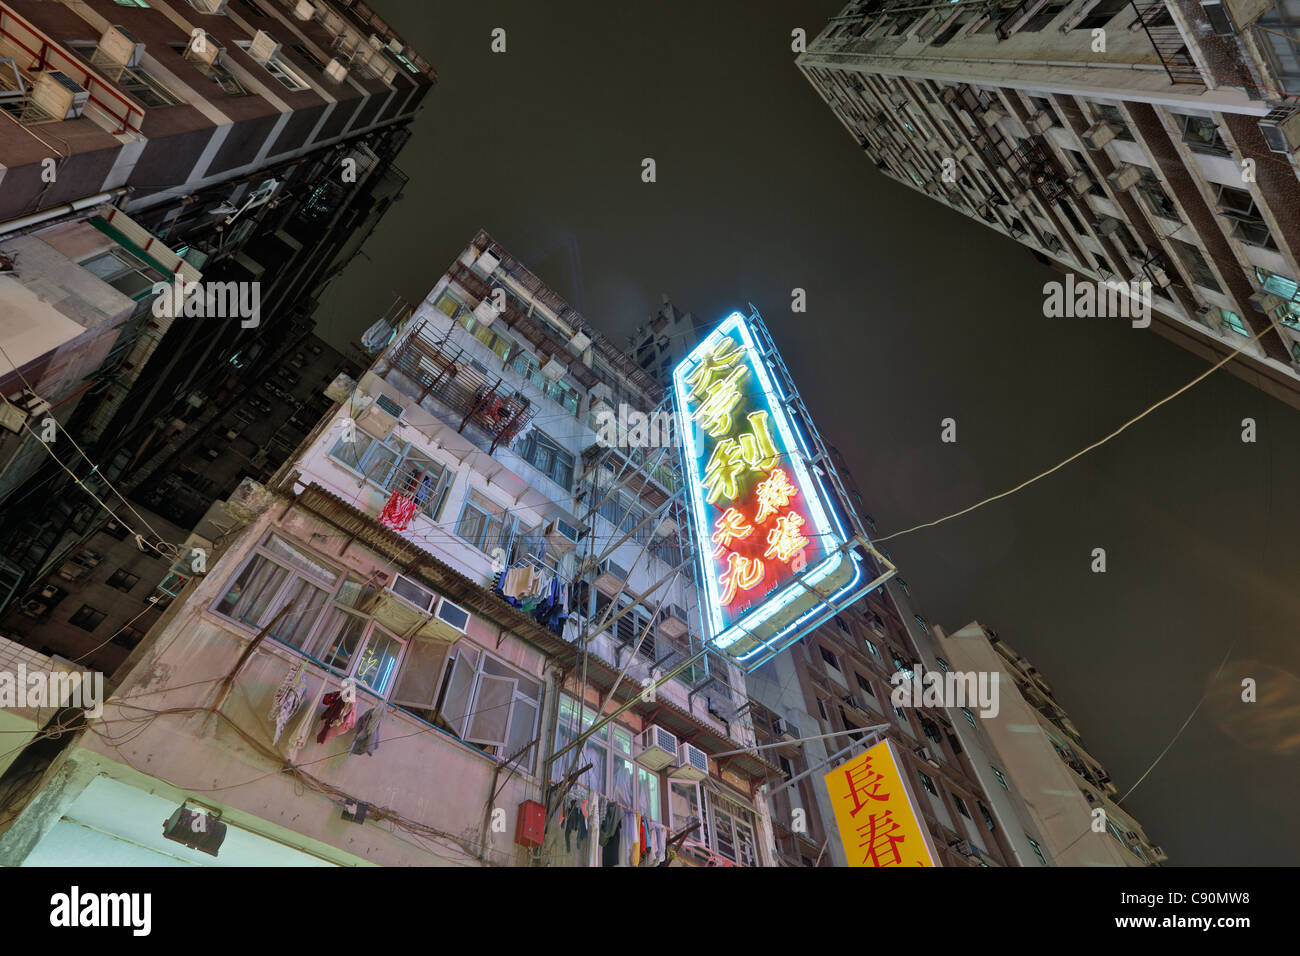 Kowloon at night, Hong Kong, China Stock Photo